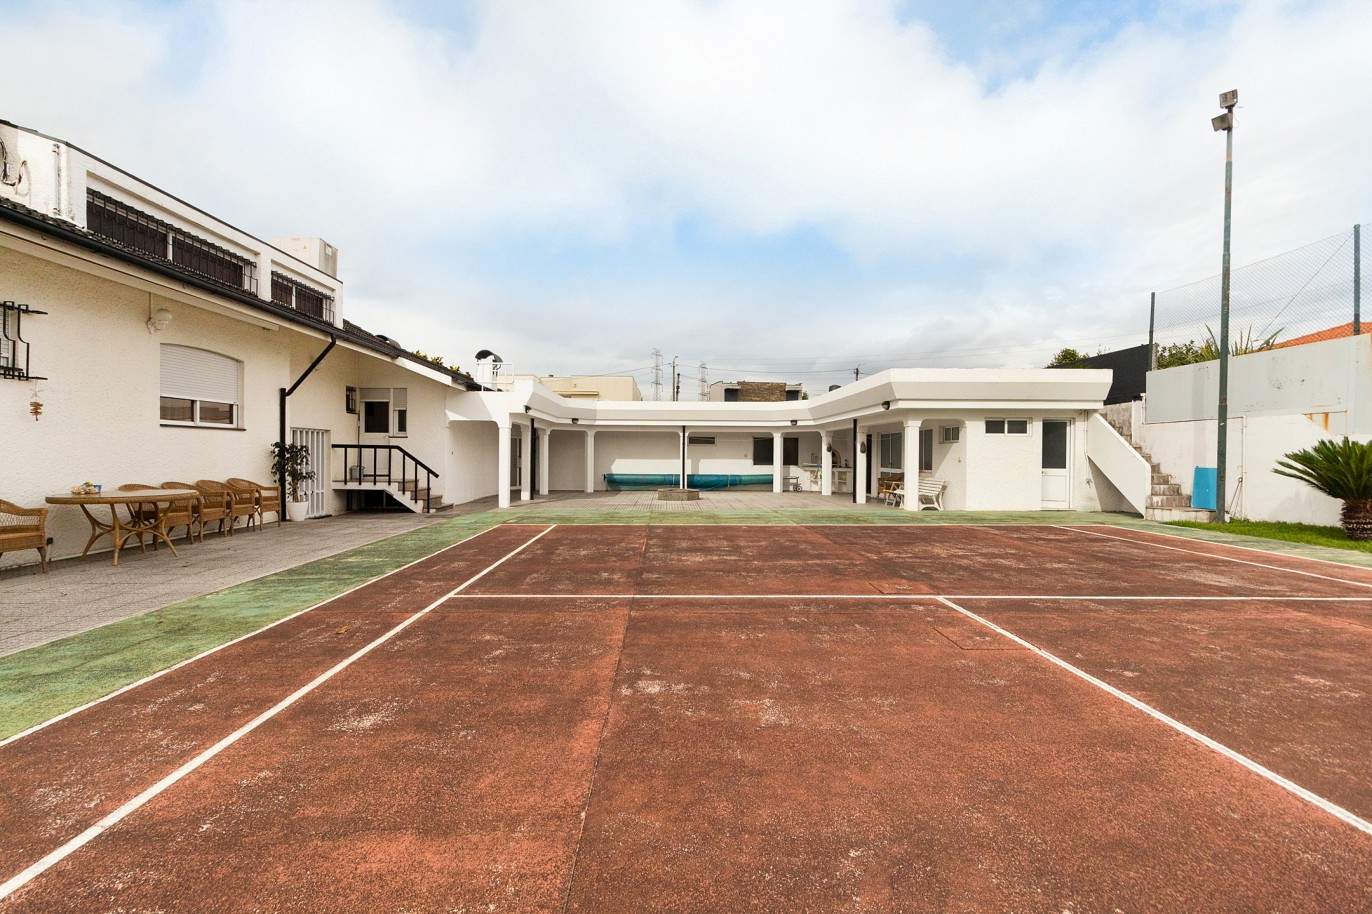 Villa de 4 dormitorios con piscina, pista de tenis y jardín, en venta, en Maia, Oporto, Portugal_210633